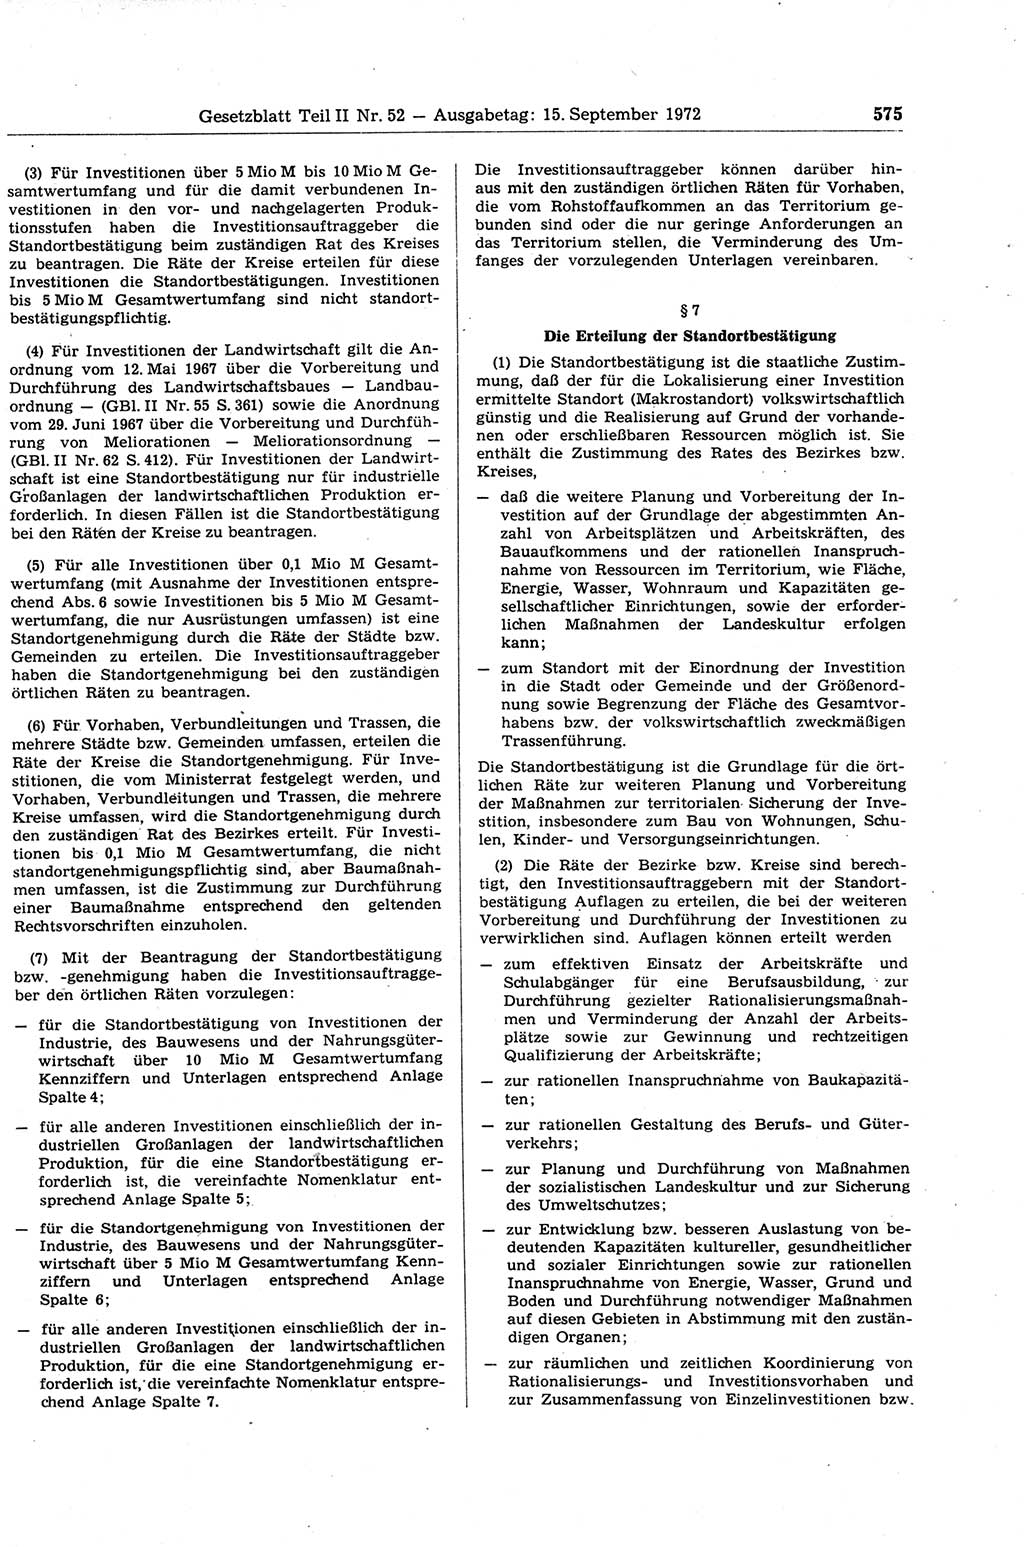 Gesetzblatt (GBl.) der Deutschen Demokratischen Republik (DDR) Teil ⅠⅠ 1972, Seite 575 (GBl. DDR ⅠⅠ 1972, S. 575)